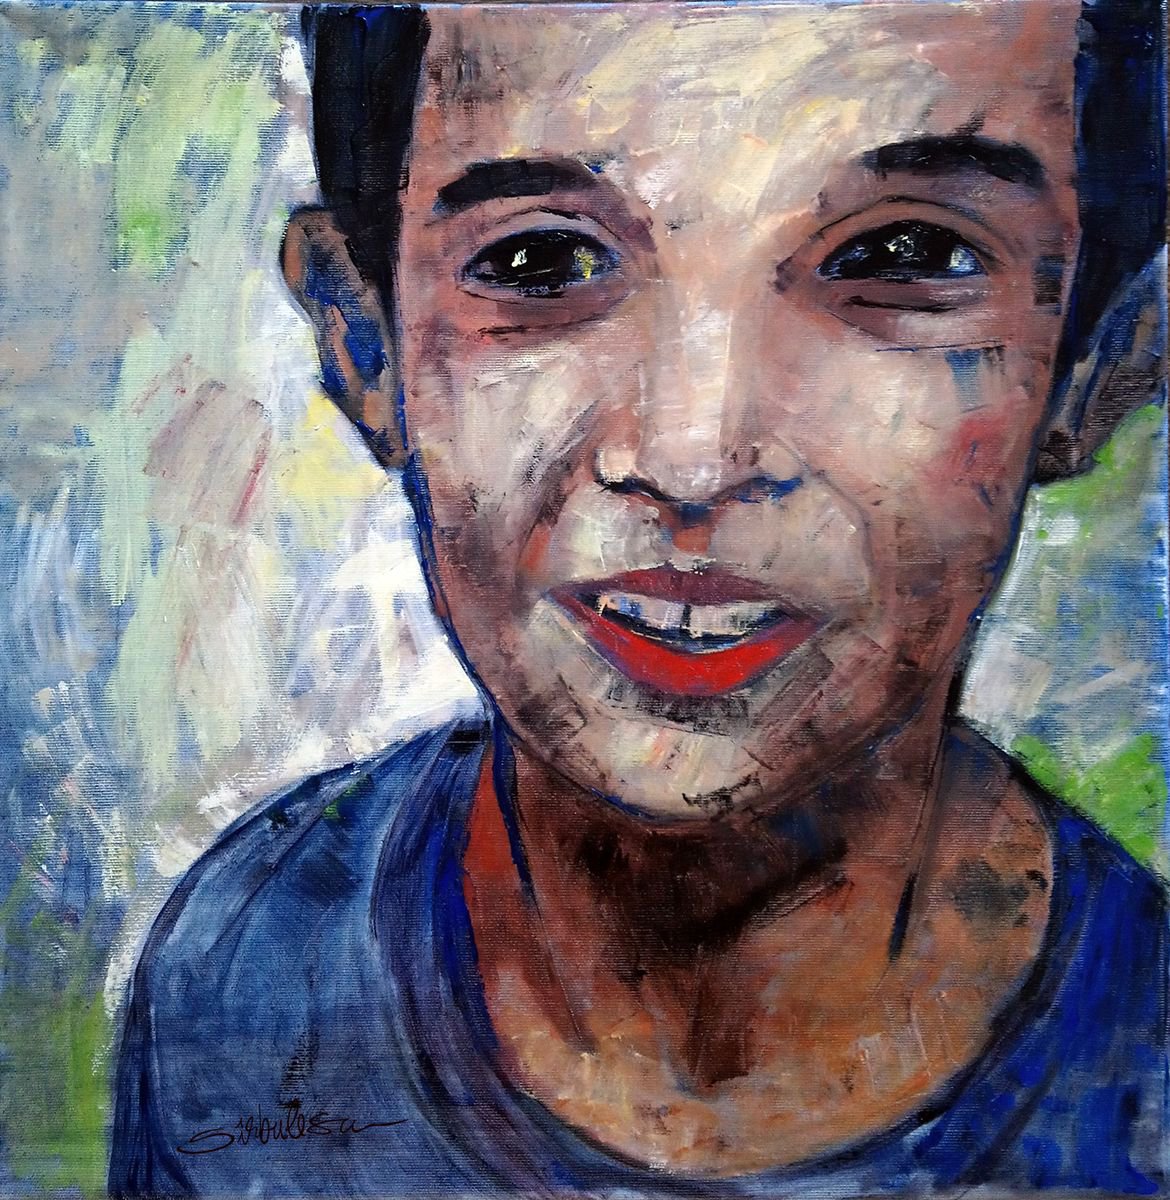 Boy portrait 01 by Cosmin Tudor Sirbulescu